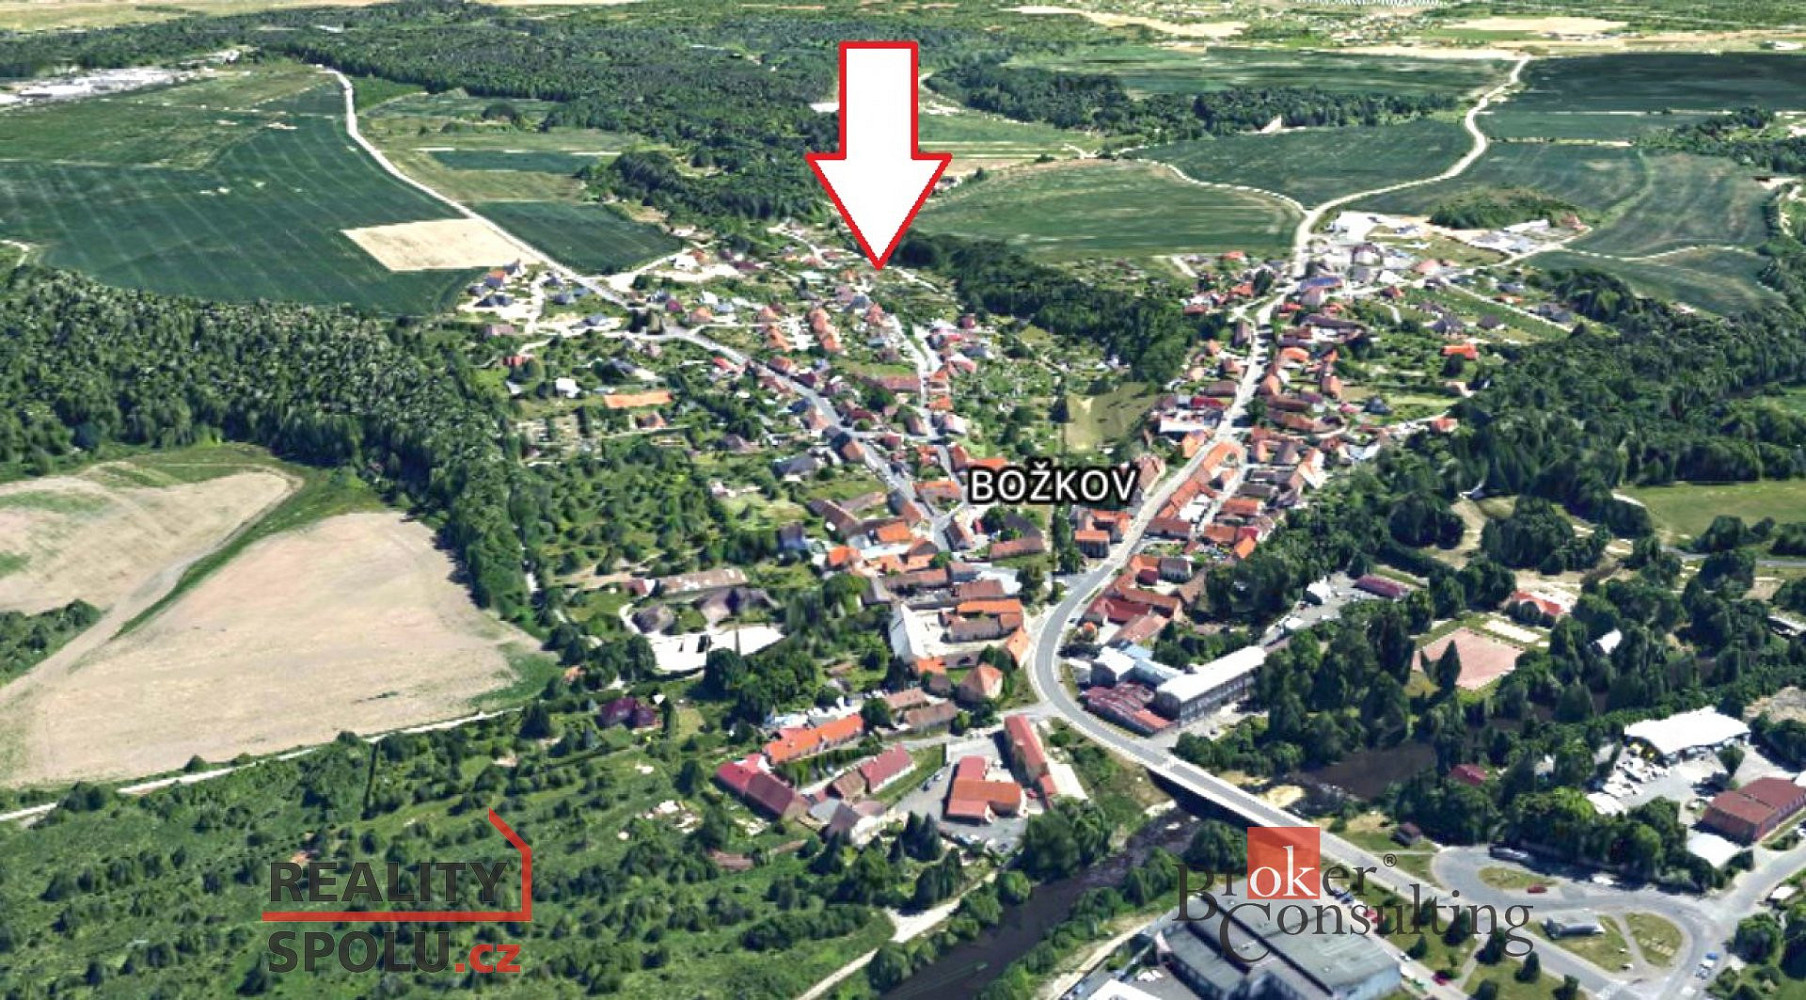 Plzeň - Božkov